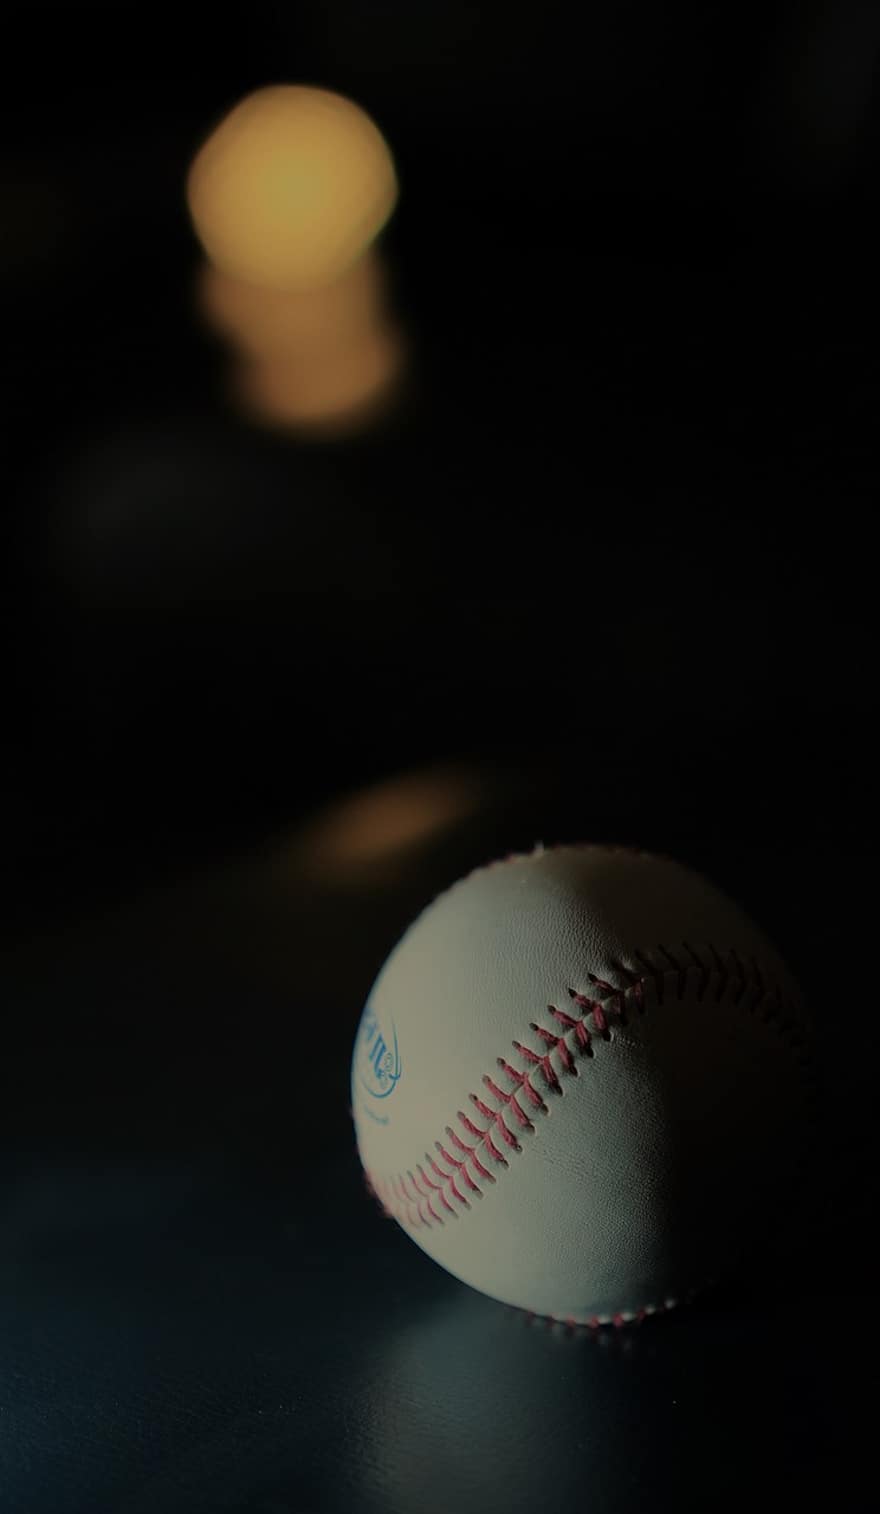 béisbol, juego, bola, deporte, macro, de cerca, noche, equipo, antecedentes, solo objeto, llama